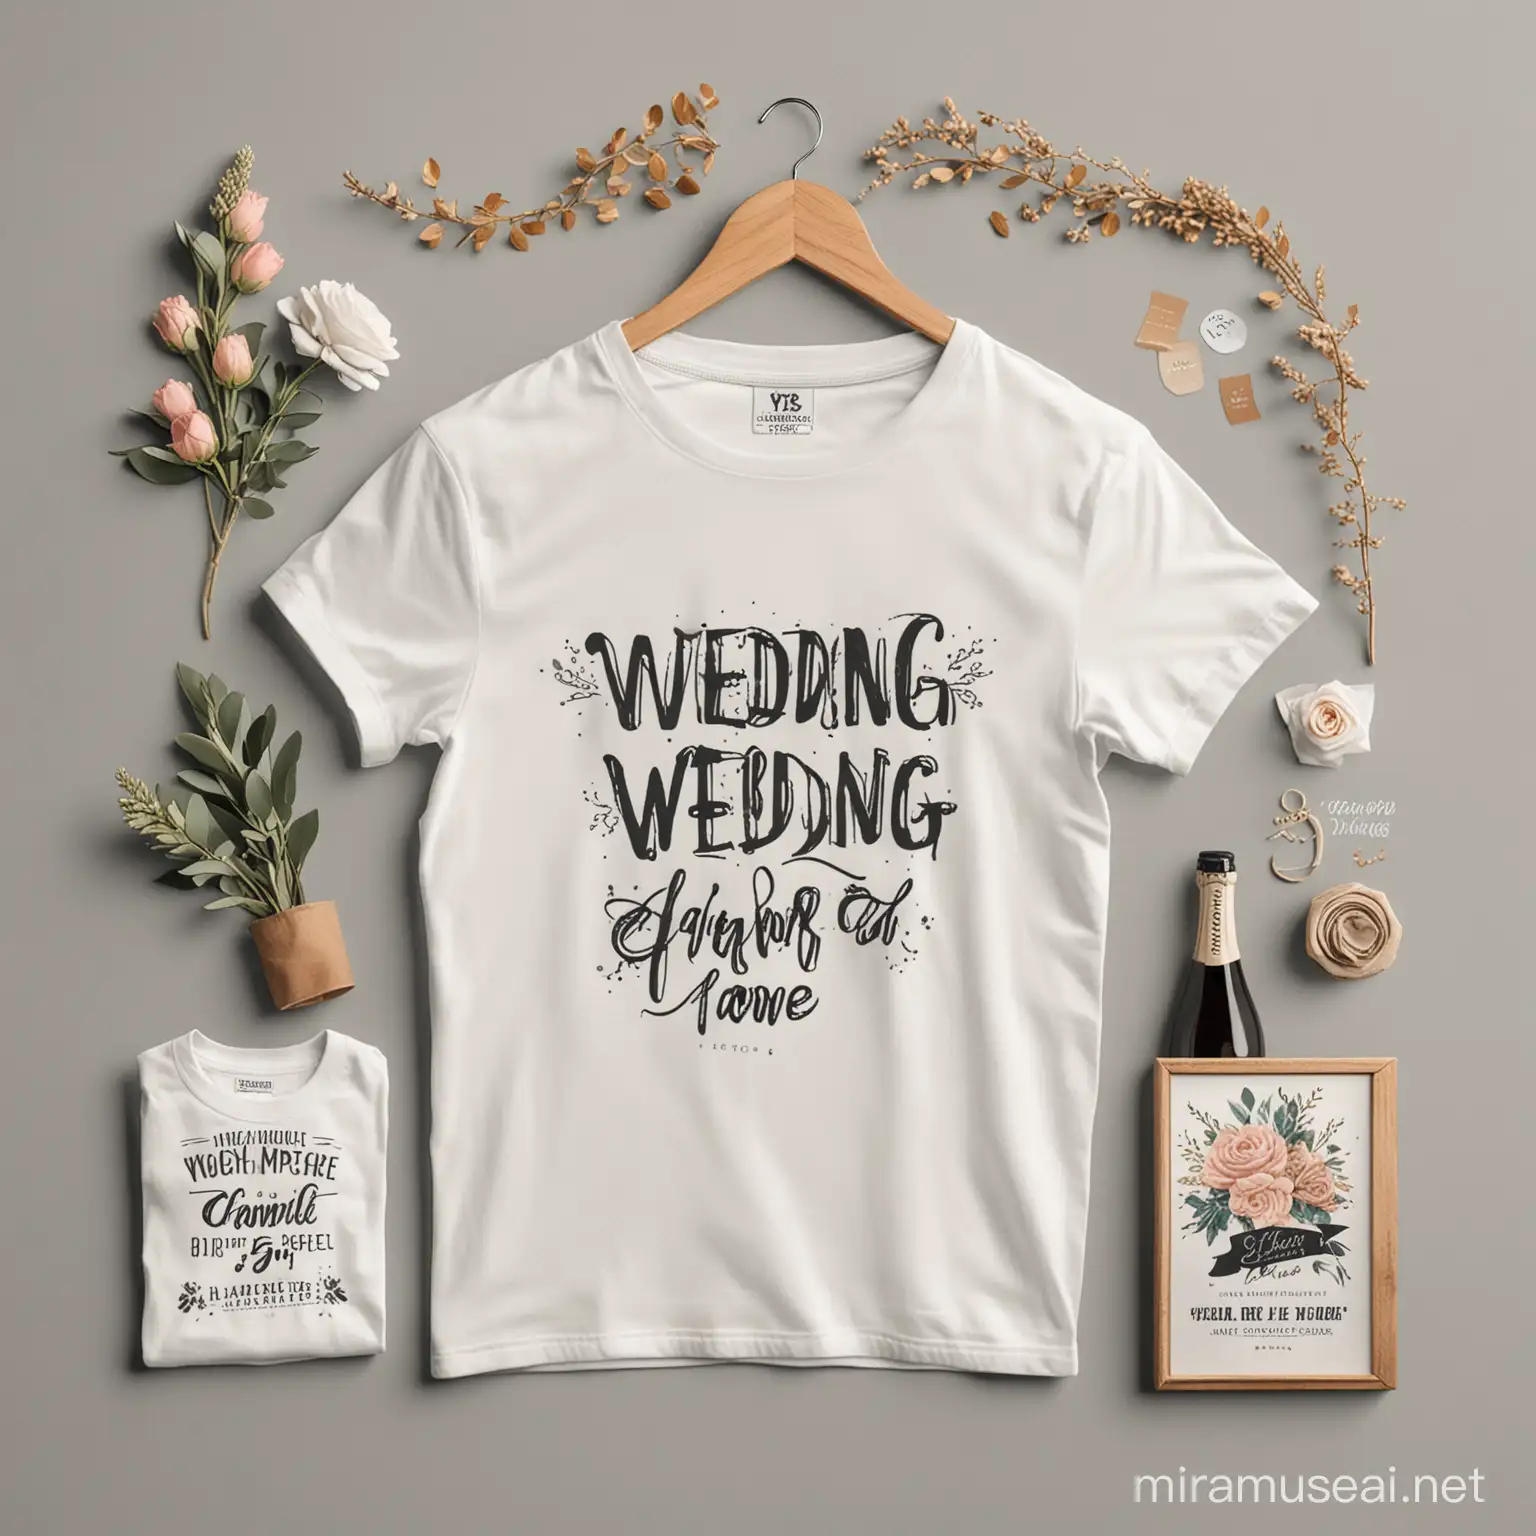 Мокапы футболок на свадебную тему